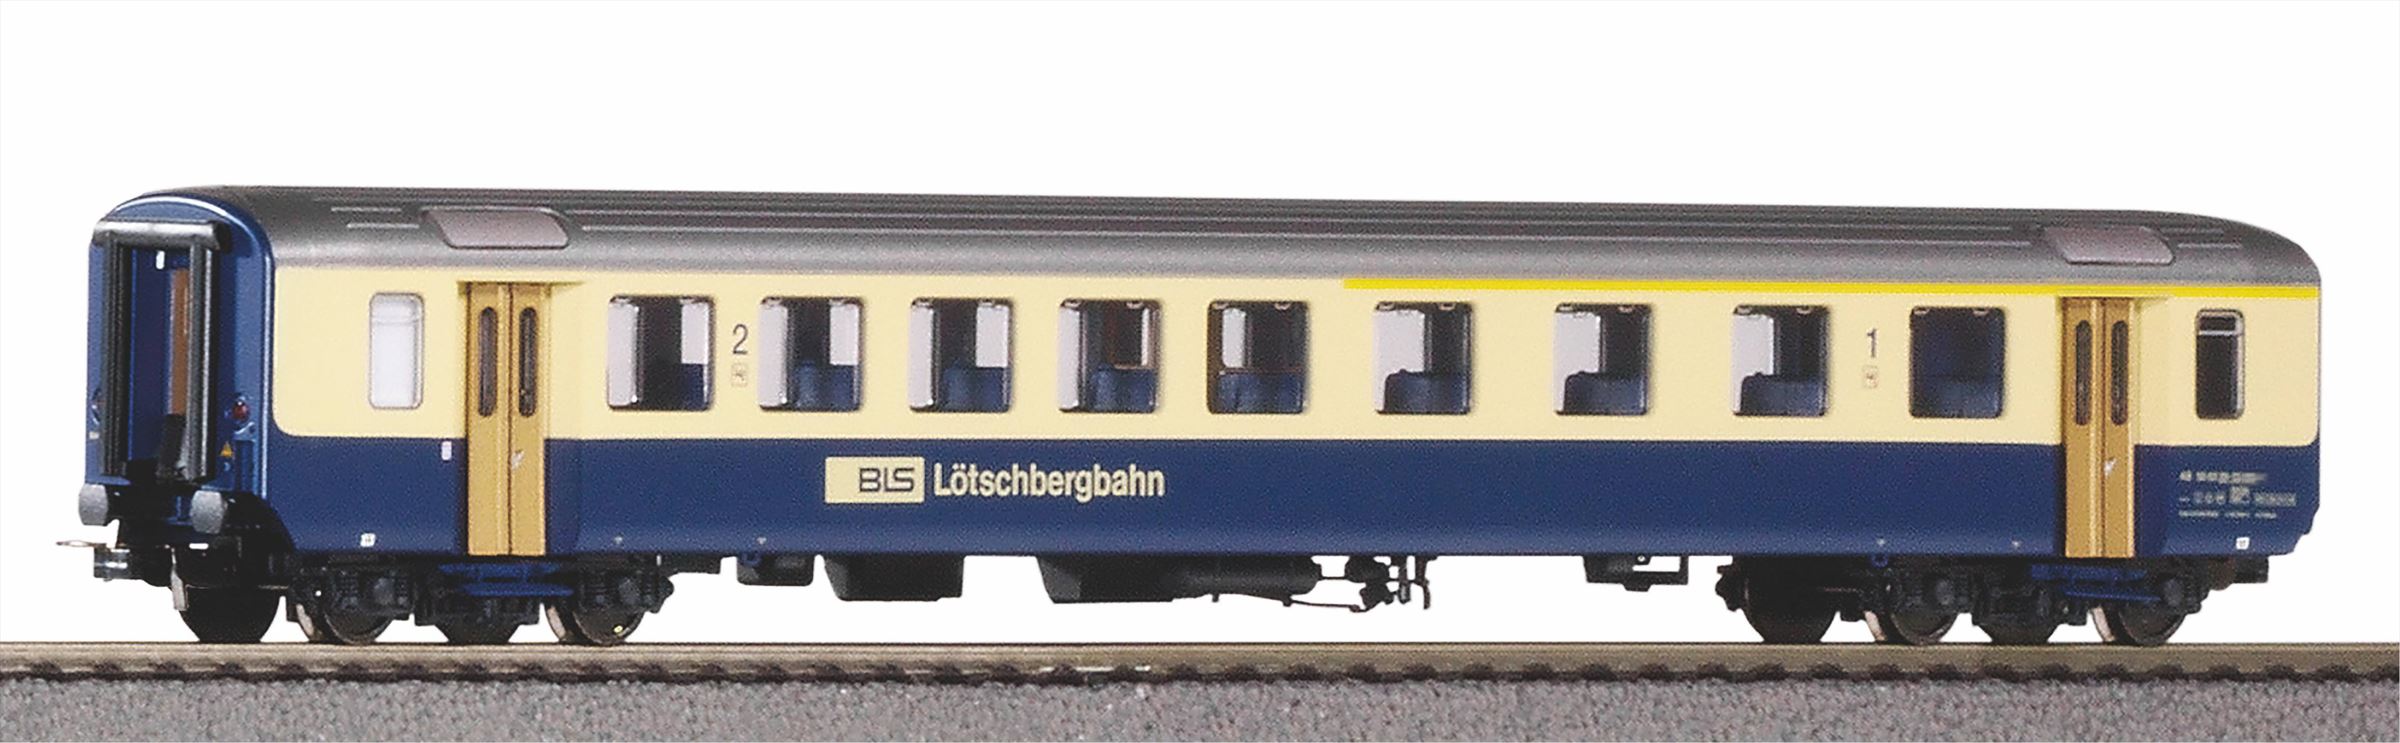 Piko 96086 H0 BLS EW I rijtuig 1e/2e klas Lötschbergbahn